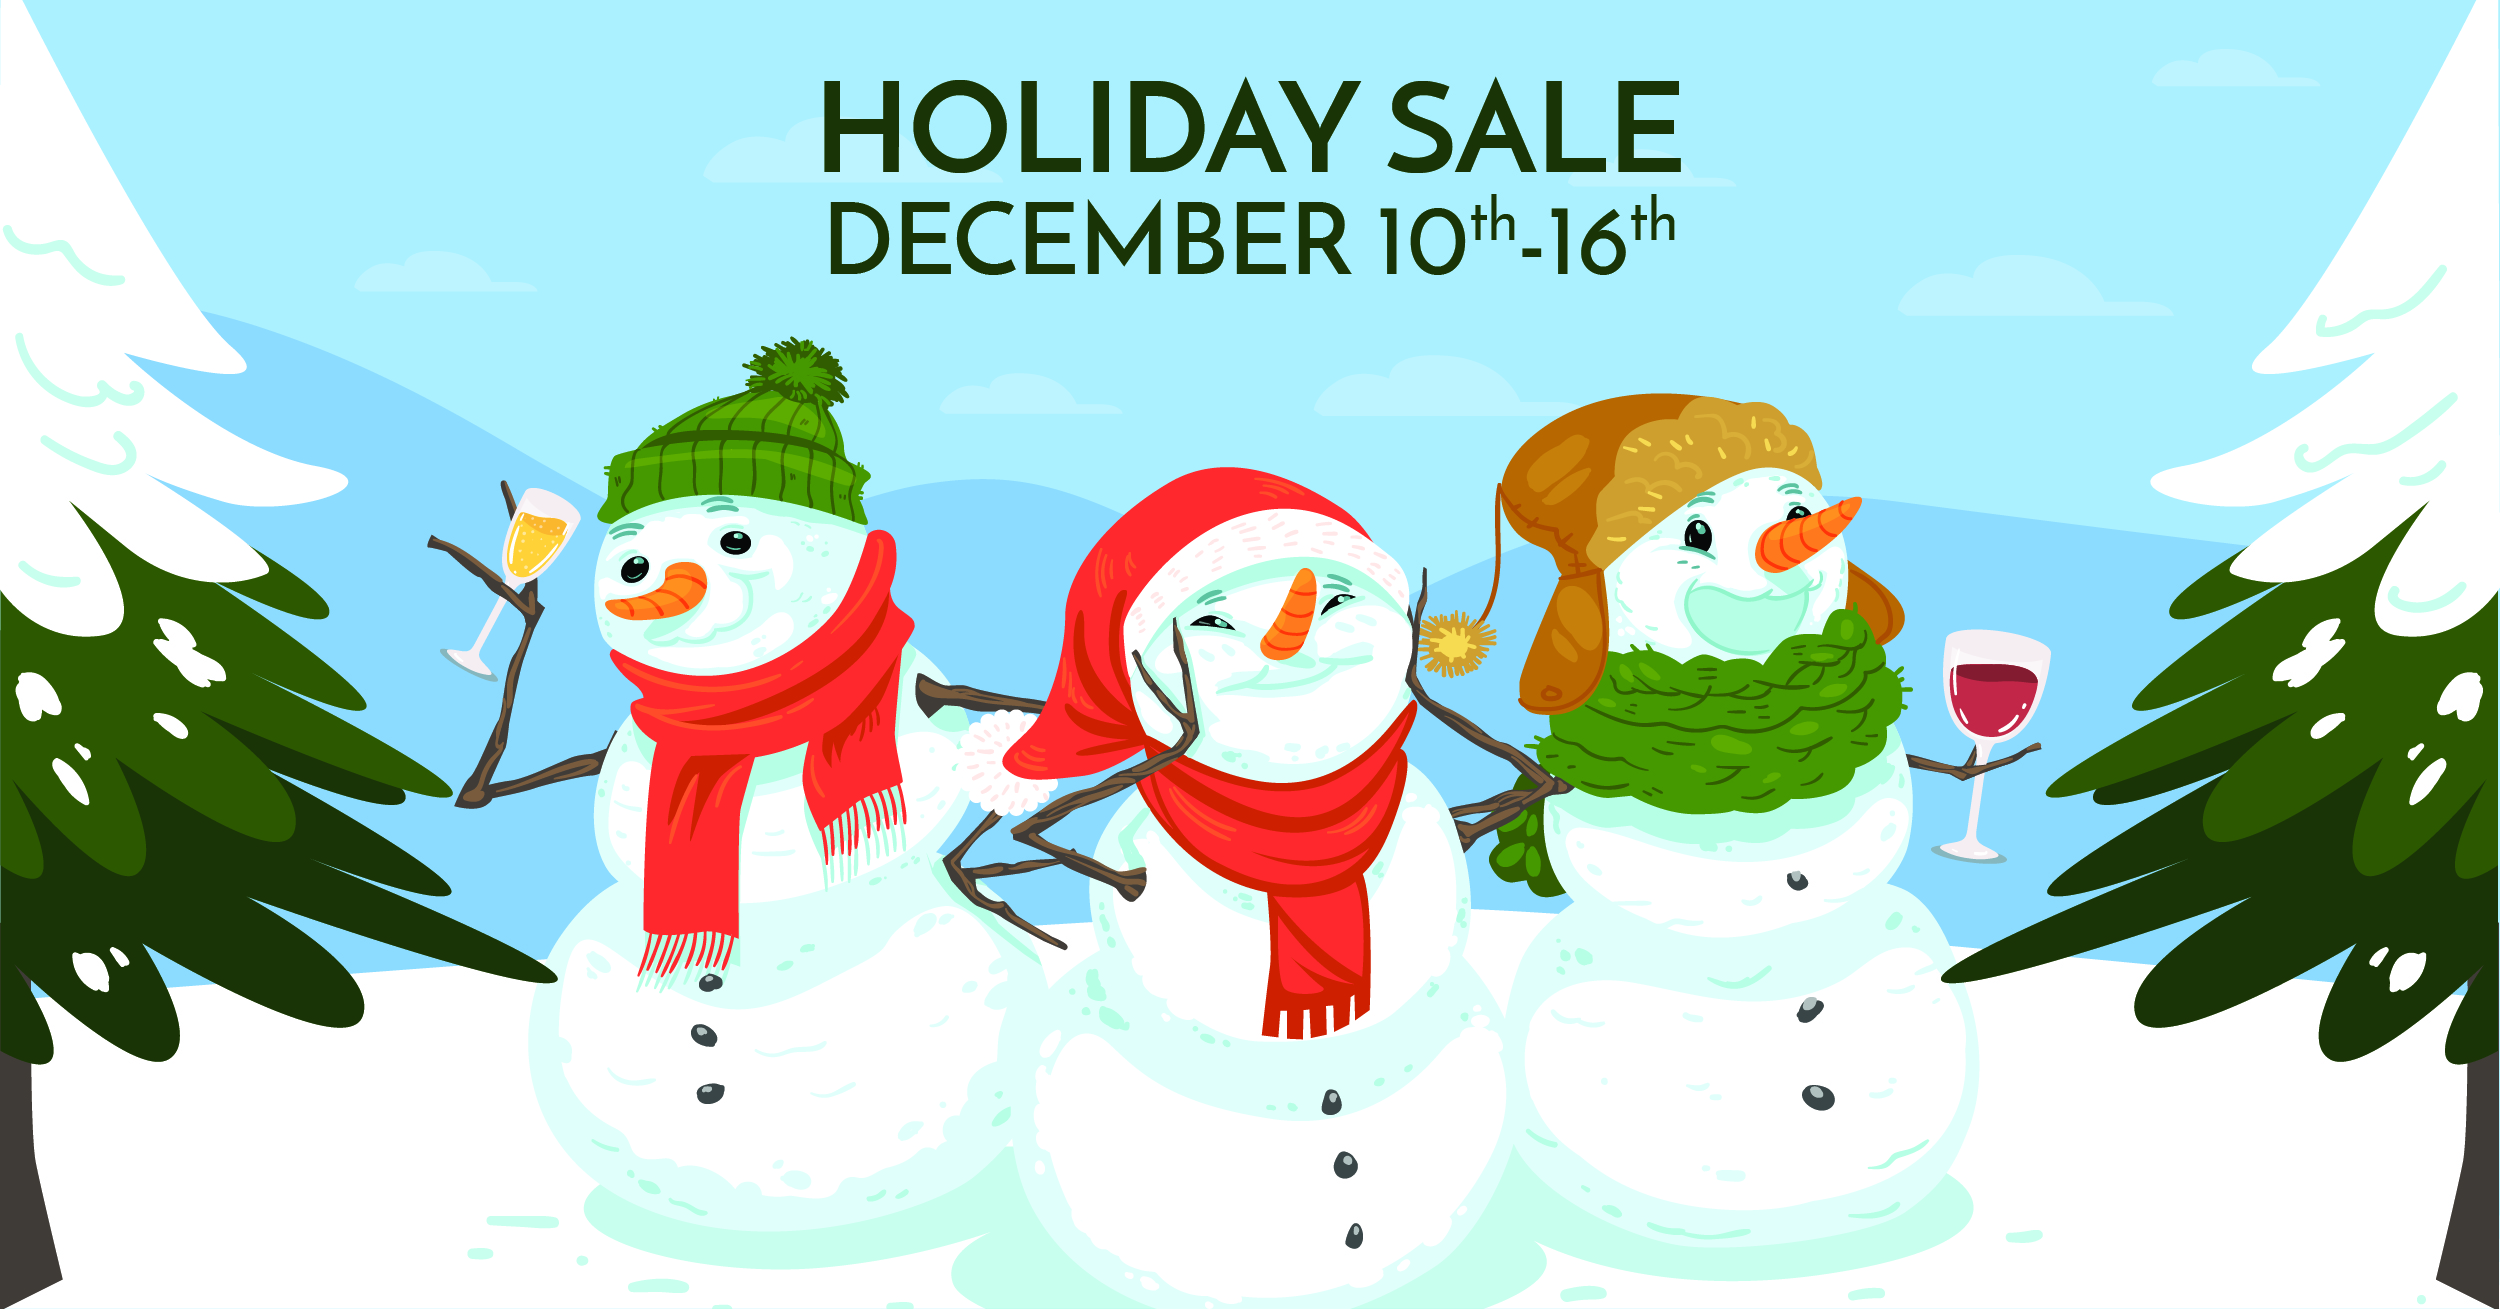 Vine & Barrel Holiday Sale December 10-16